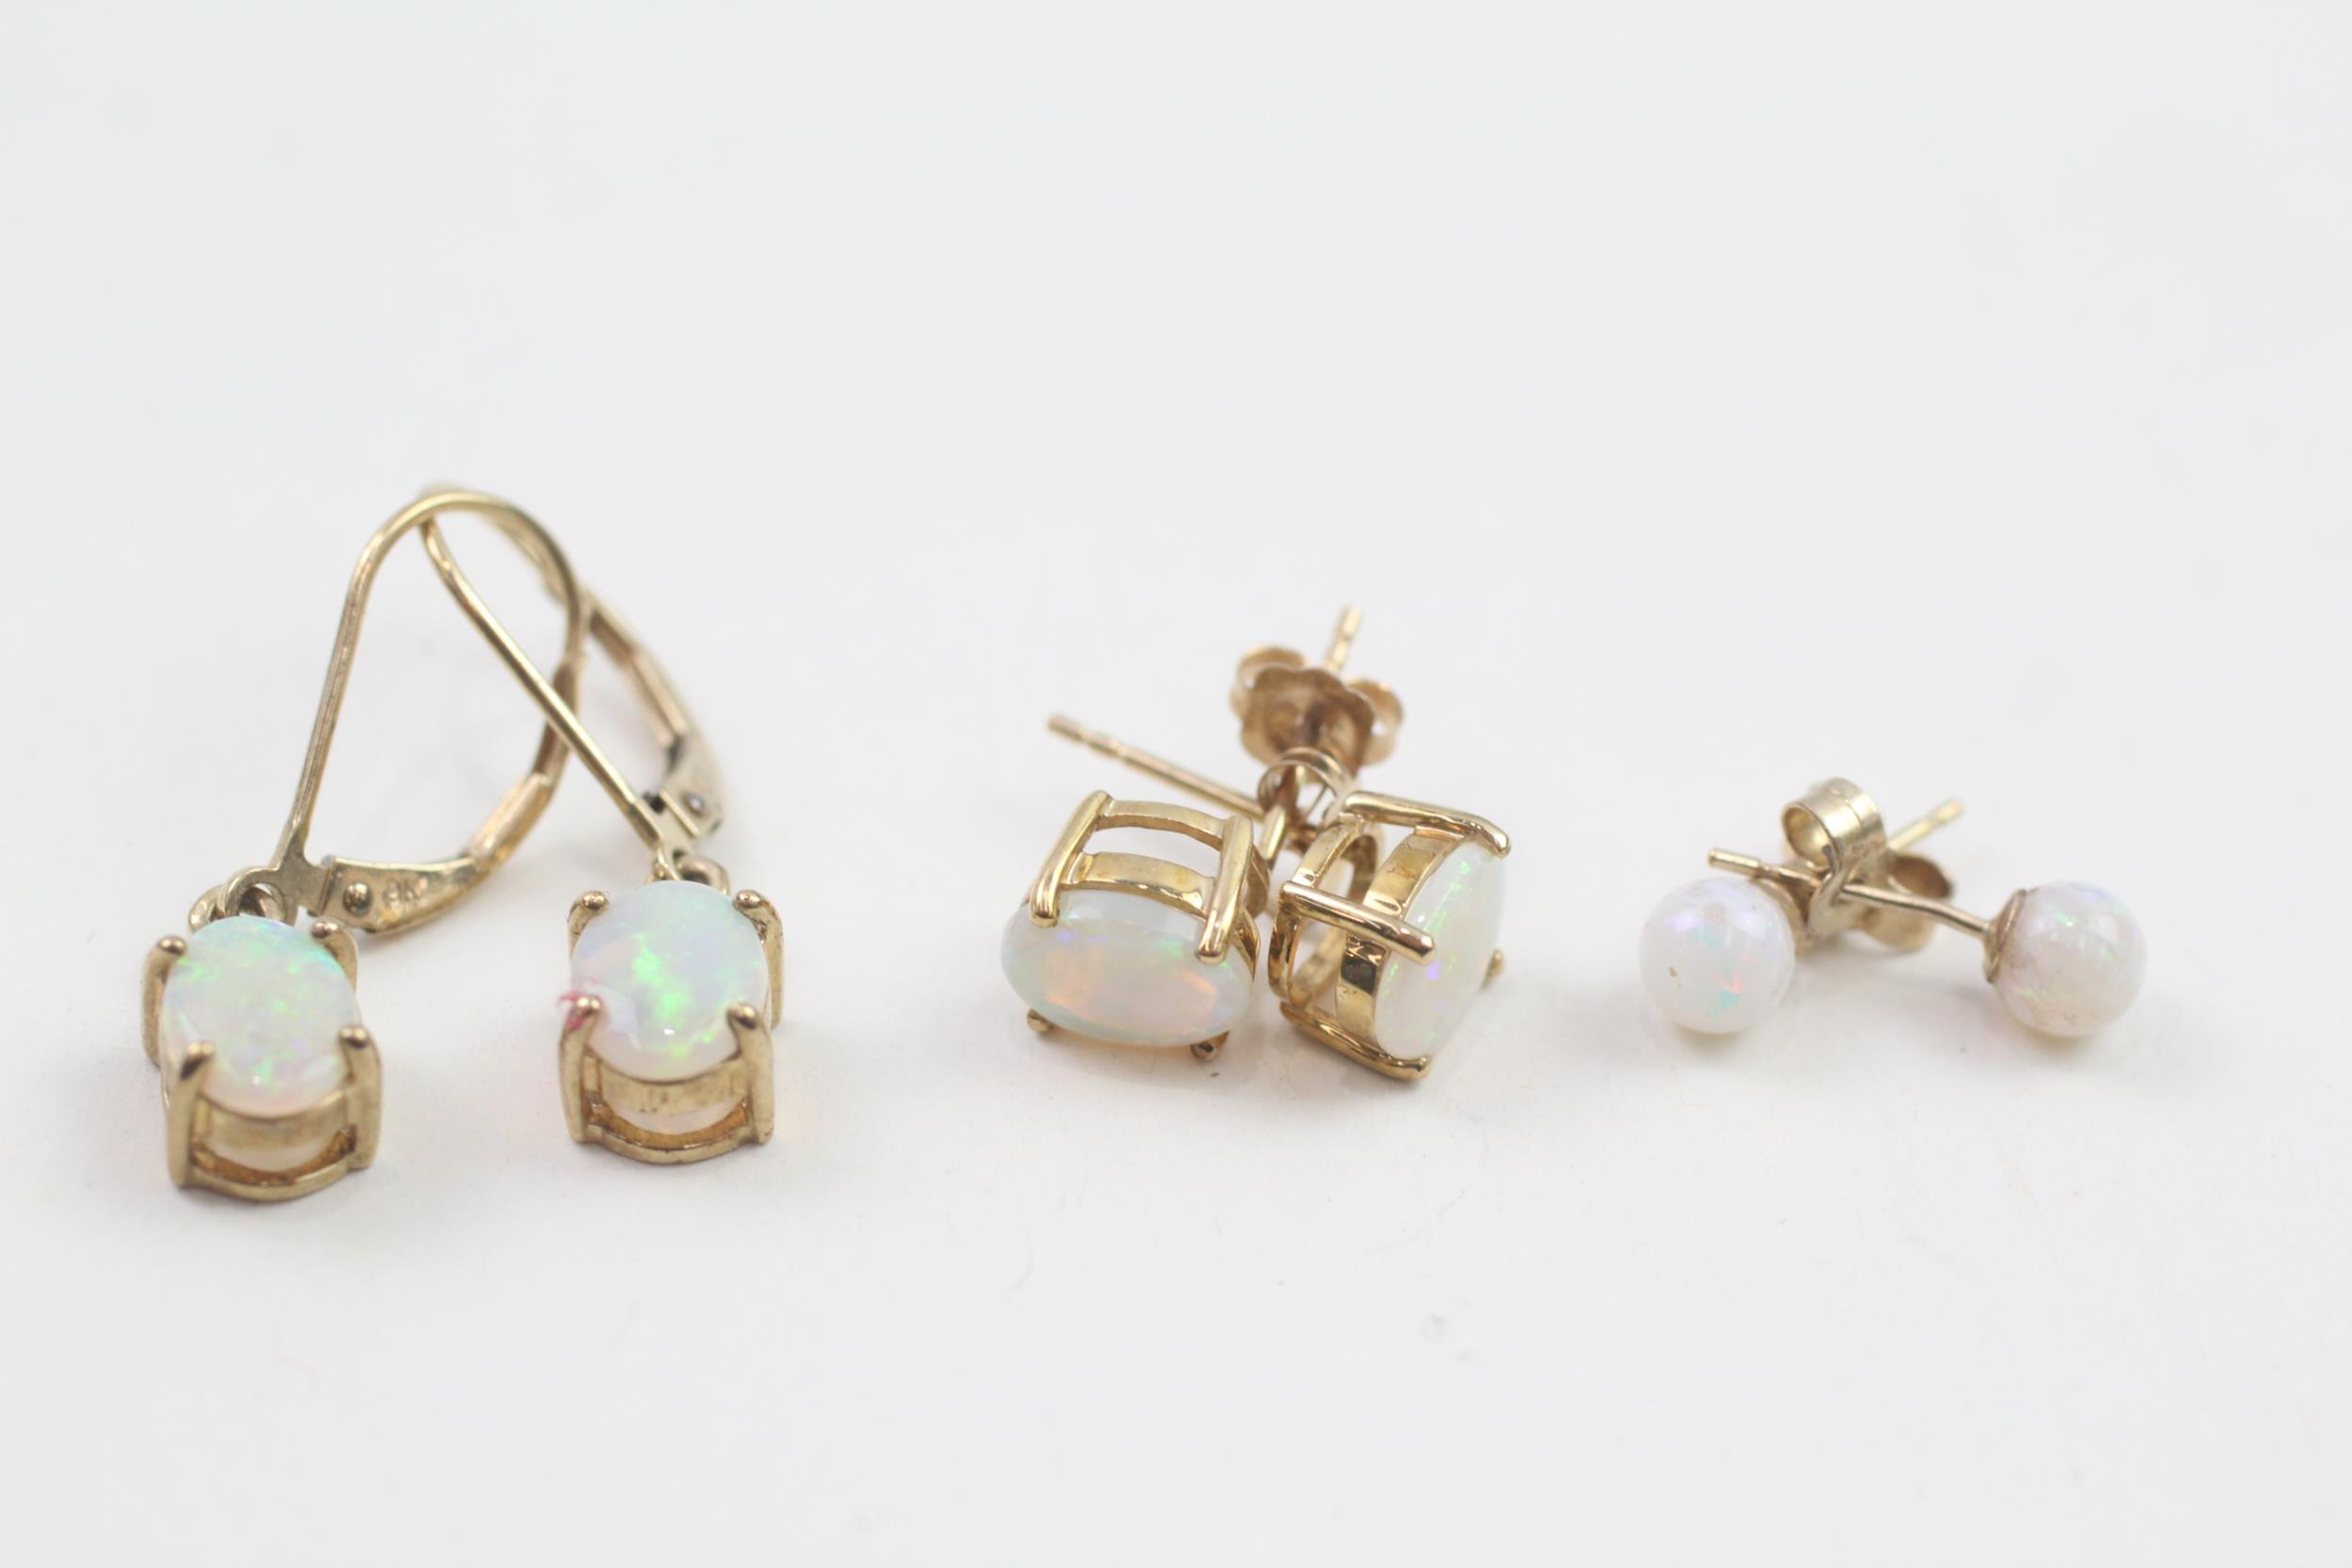 3 x 9ct gold opal earrings (3.6g)